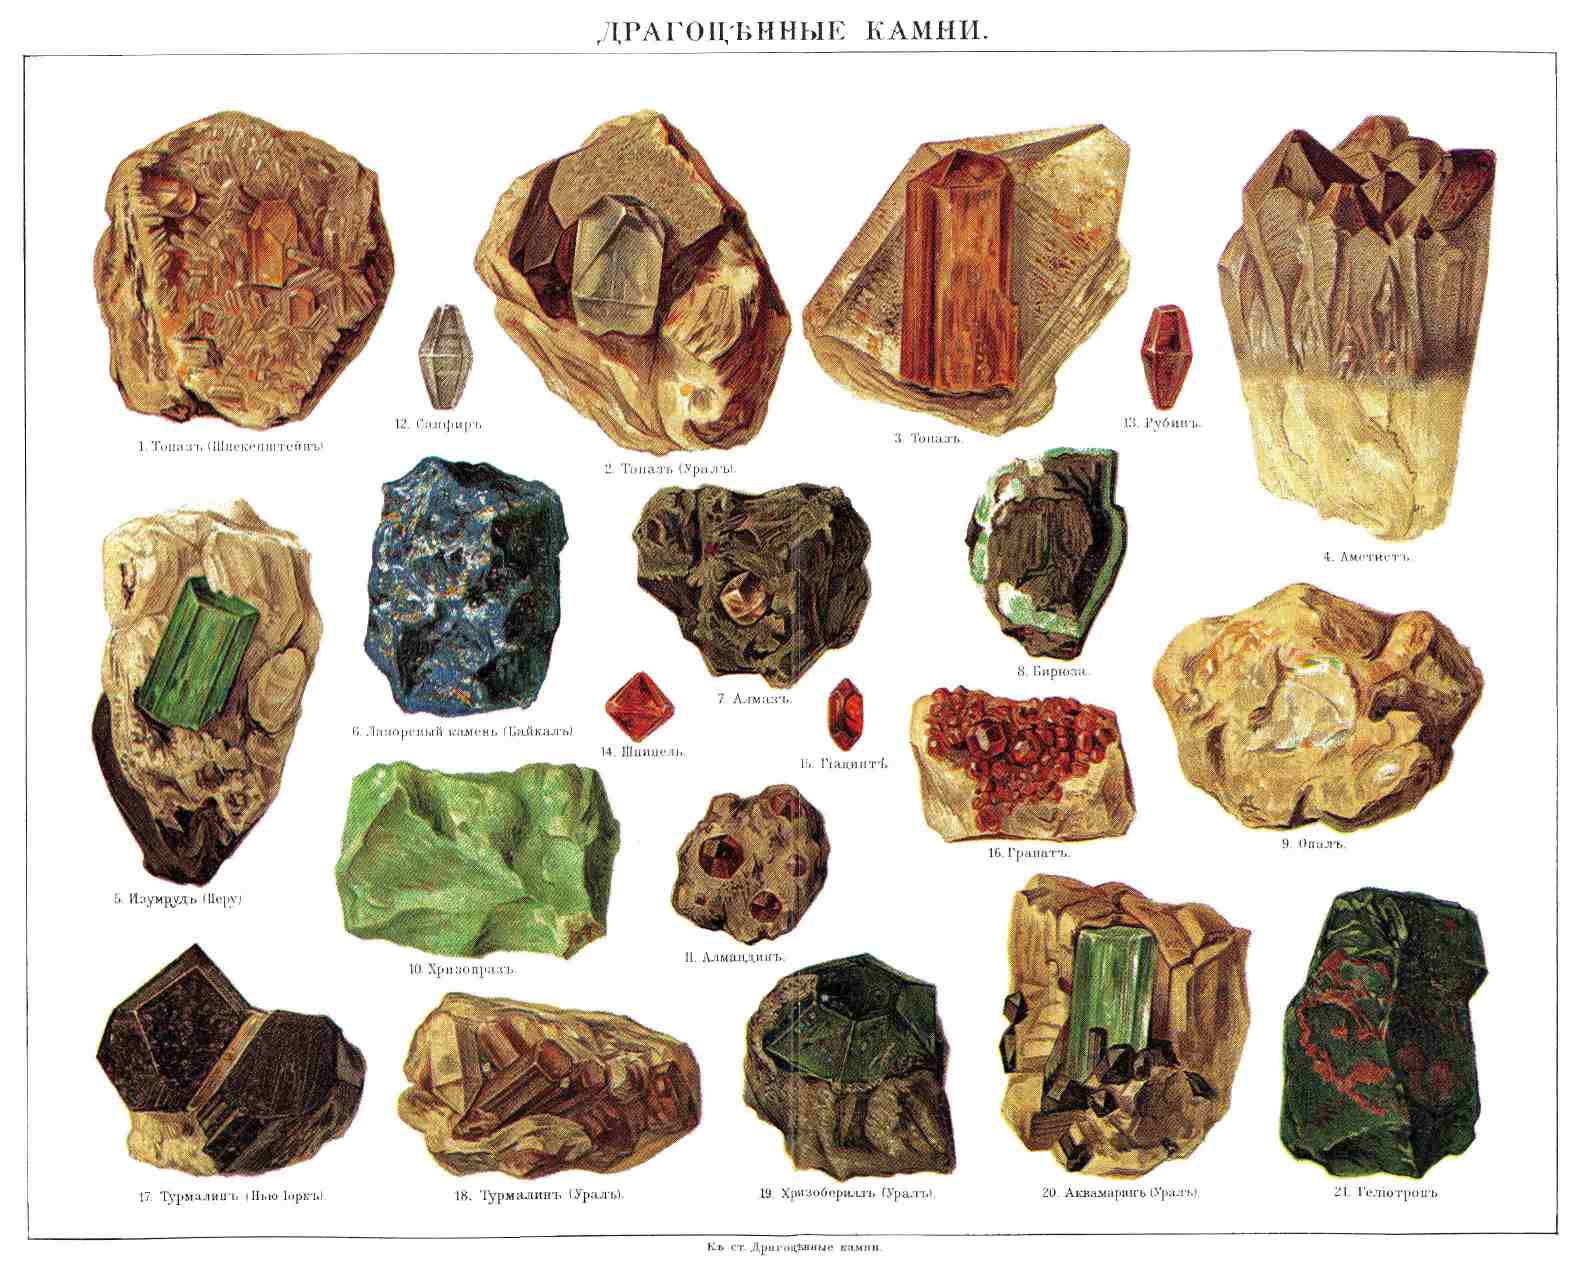 — Этим именем называют минералы, отличающиеся особенным блеском, красотою окраски или совершенною бесцветностью, прозрачностью и твердостью, употребляемые как украшения. Перечисленные свойства в связи с редкостью нахождения в природе обусловливают их ценность; впрочем, некоторые минералы, в древности считавшиеся особенно драгоценными, в настоящее время стоят недорого. Некоторые непрозрачные минералы, обладающие красивой окраской или игрой цветов, также употребляются на украшения. По красоте, редкости нахождения и цене все Д. камни разделяются на 4—5 классов. К первым трем принадлежат собственно Д. камни: 1) алмаз, корунд (рубин и сафир), смарагд (изумруд и аквамарин), шпинель (Rubinbalais); 2) эвклаз, хризоберилл, циркон (гиацинт), фенакит, топаз, благородный опал, гранат (демантоид, альмандин и пирон, или богемский гранат), турмалин (красный, зеленый и голубой); 3) бирюза, хризолит, кордиерит, цианит, андалузит, ставролит, гидденит, аксинит, везувиан, диопсид. Четвертый и пятый классы составляют полудрагоценные камни: 4) кварц (горный хрусталь, аметист и дымчатый топаз), халцедон (оникс, сардоникс, карнеол, хризопраз, гелиотроп), агат, полевой шпат (адулар, лабрадор), лазоревый камень; 5) янтарь, плавиковый шпат, нефрит, малахит, обсидиан, серпентин.